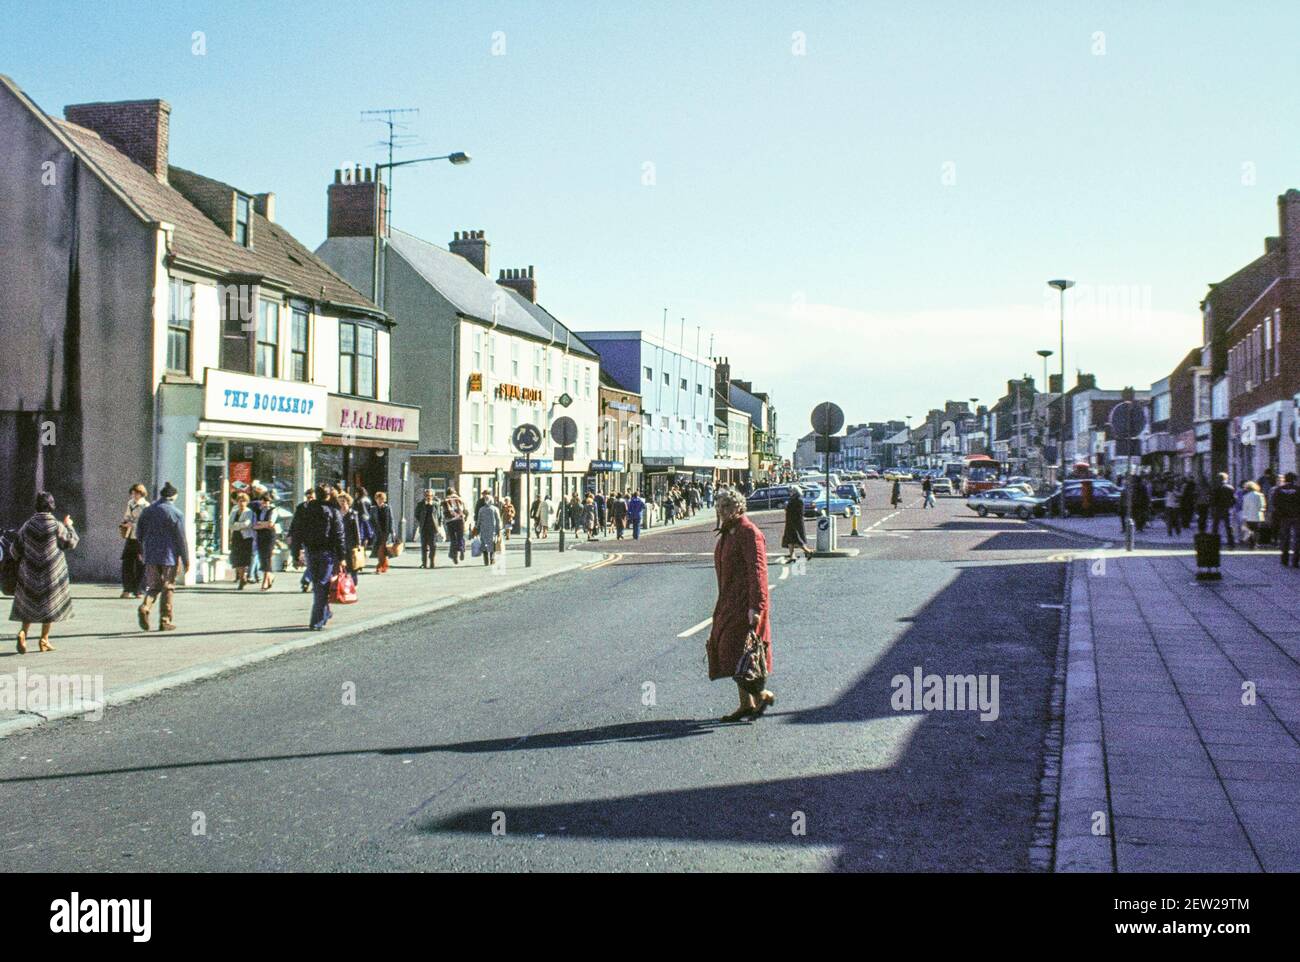 1978 - Redcar - Negozi e shopping vicino al The Swan Hotel su Redcar High Street nel 1978. Il cigno è ora un ramo di Wilkinsons. La High Street di Redcar è ora pedonale e conduce alla Esplanade e al lungomare. Redcar High st, Redcar, Redcar e Cleveland, North Yorkshire, Inghilterra, GB, Regno Unito, Europa Foto Stock